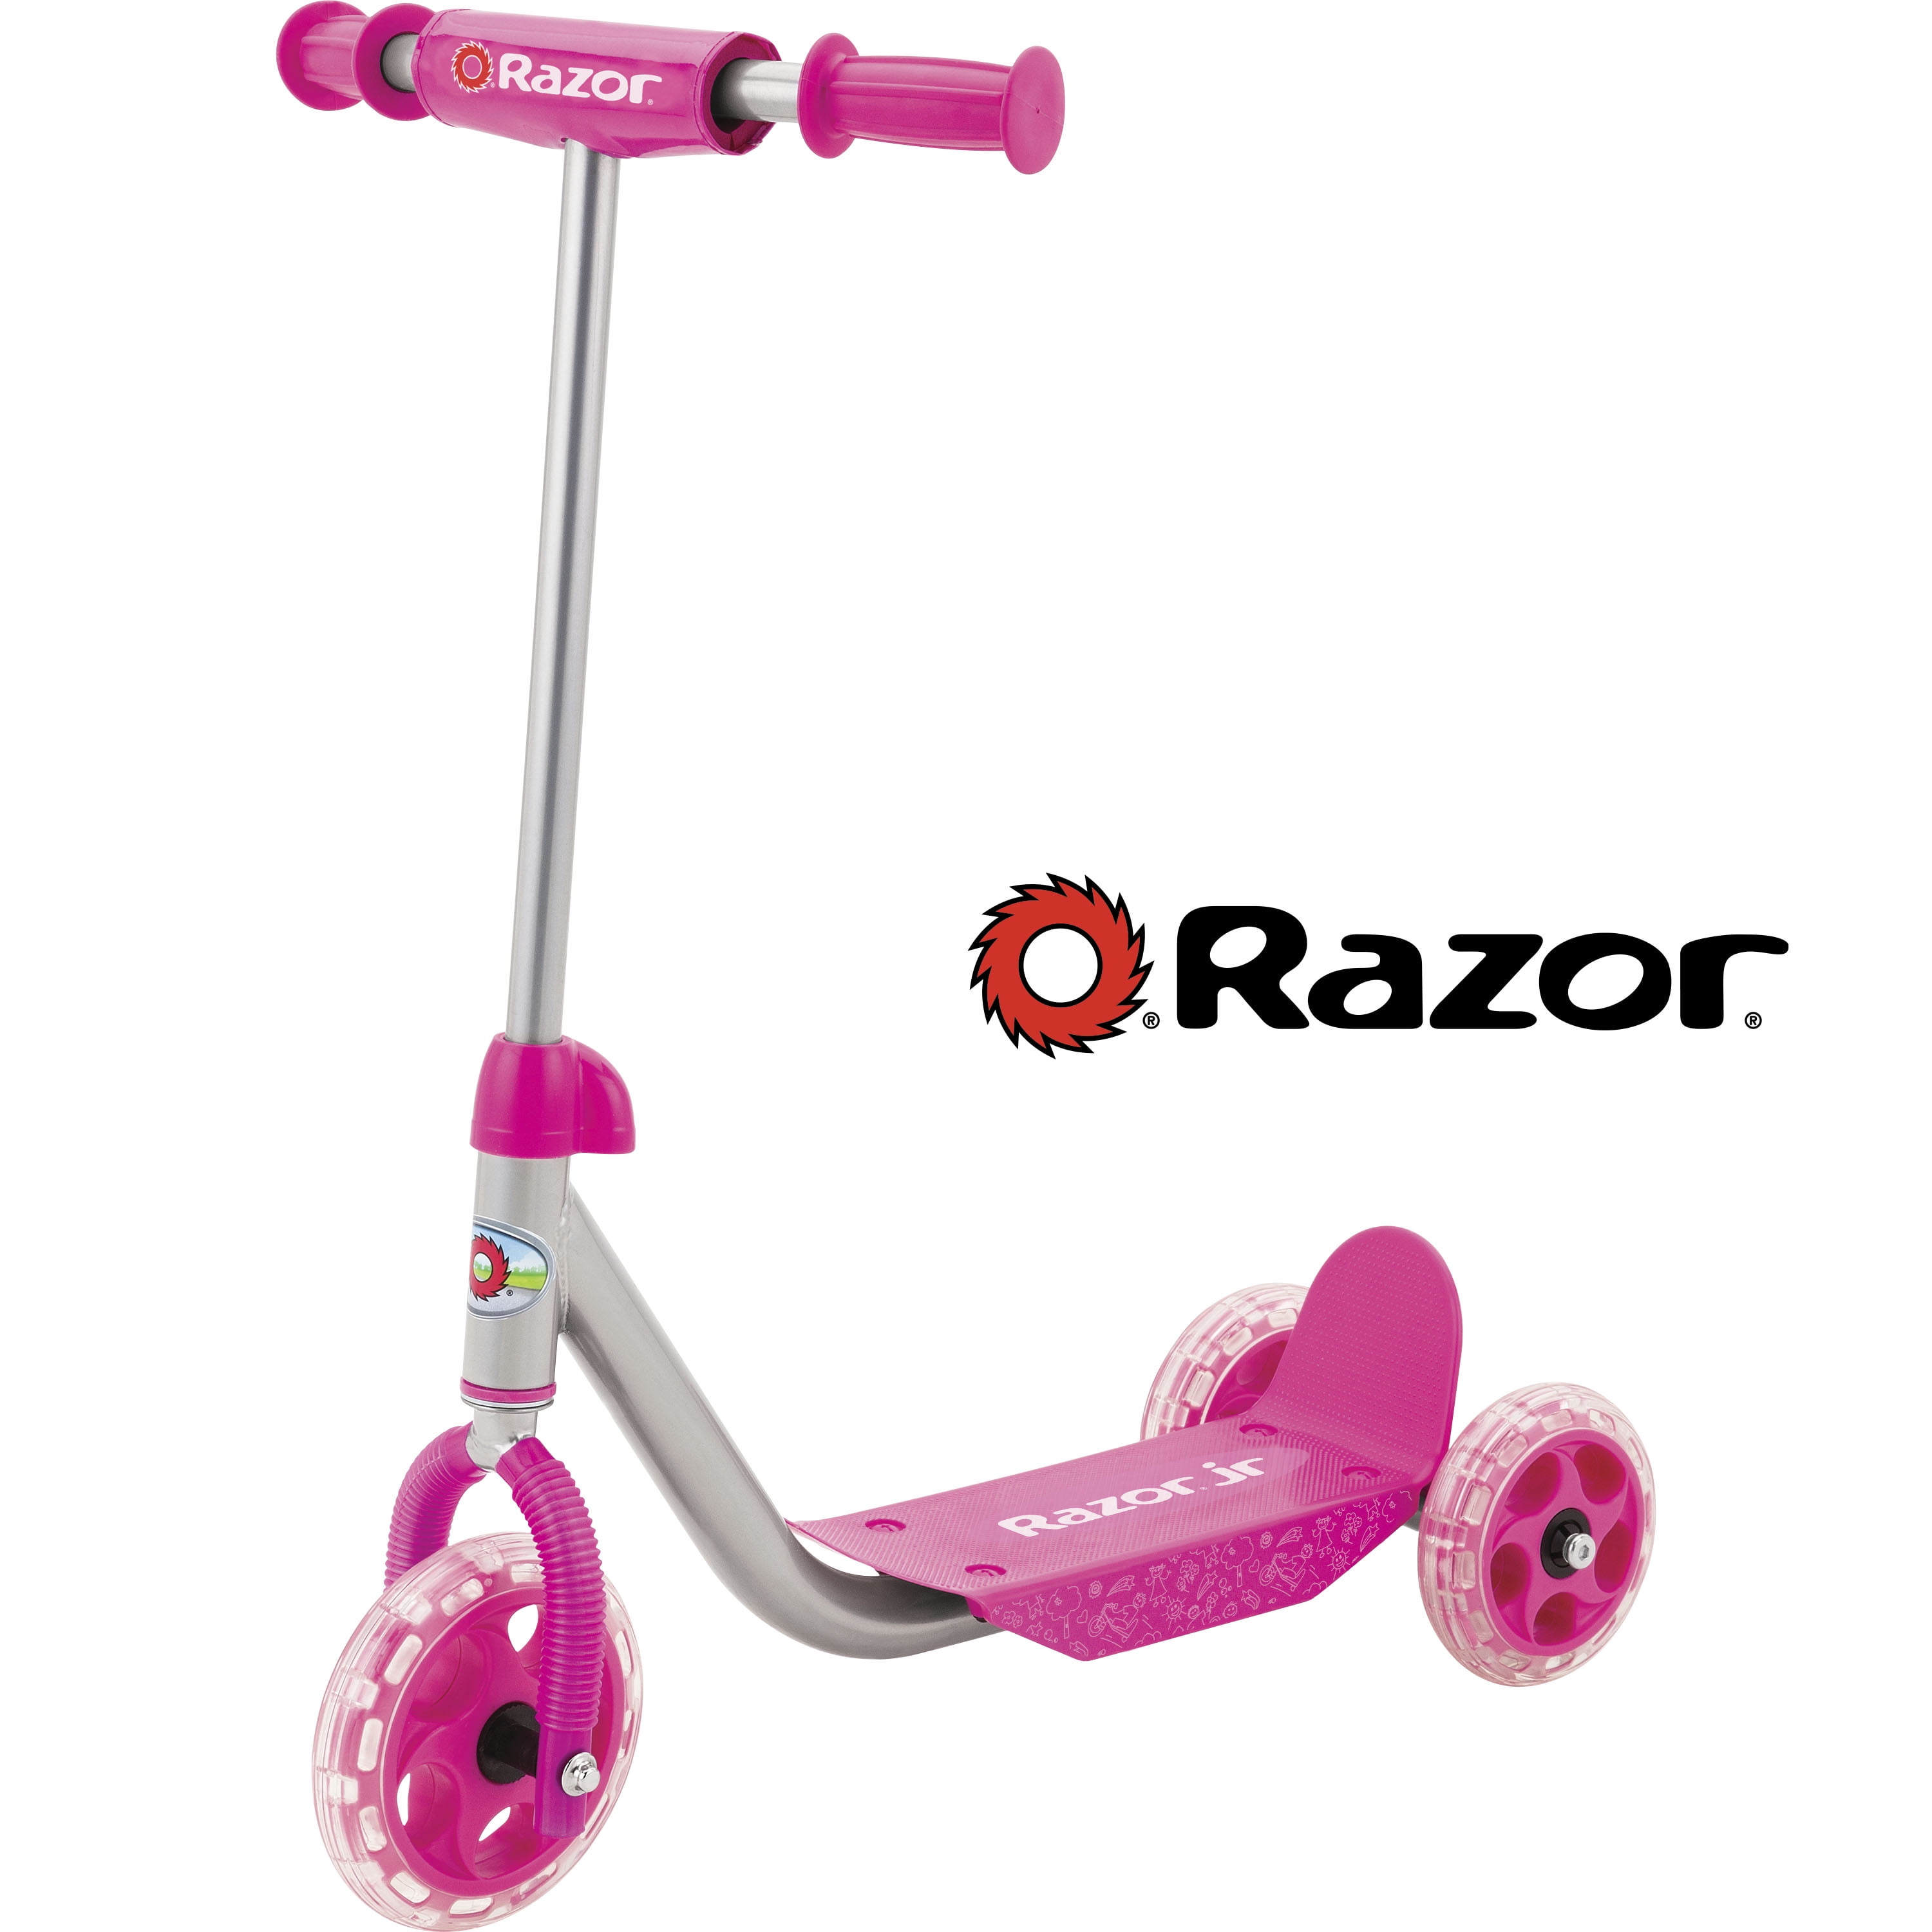 razor ride on toy